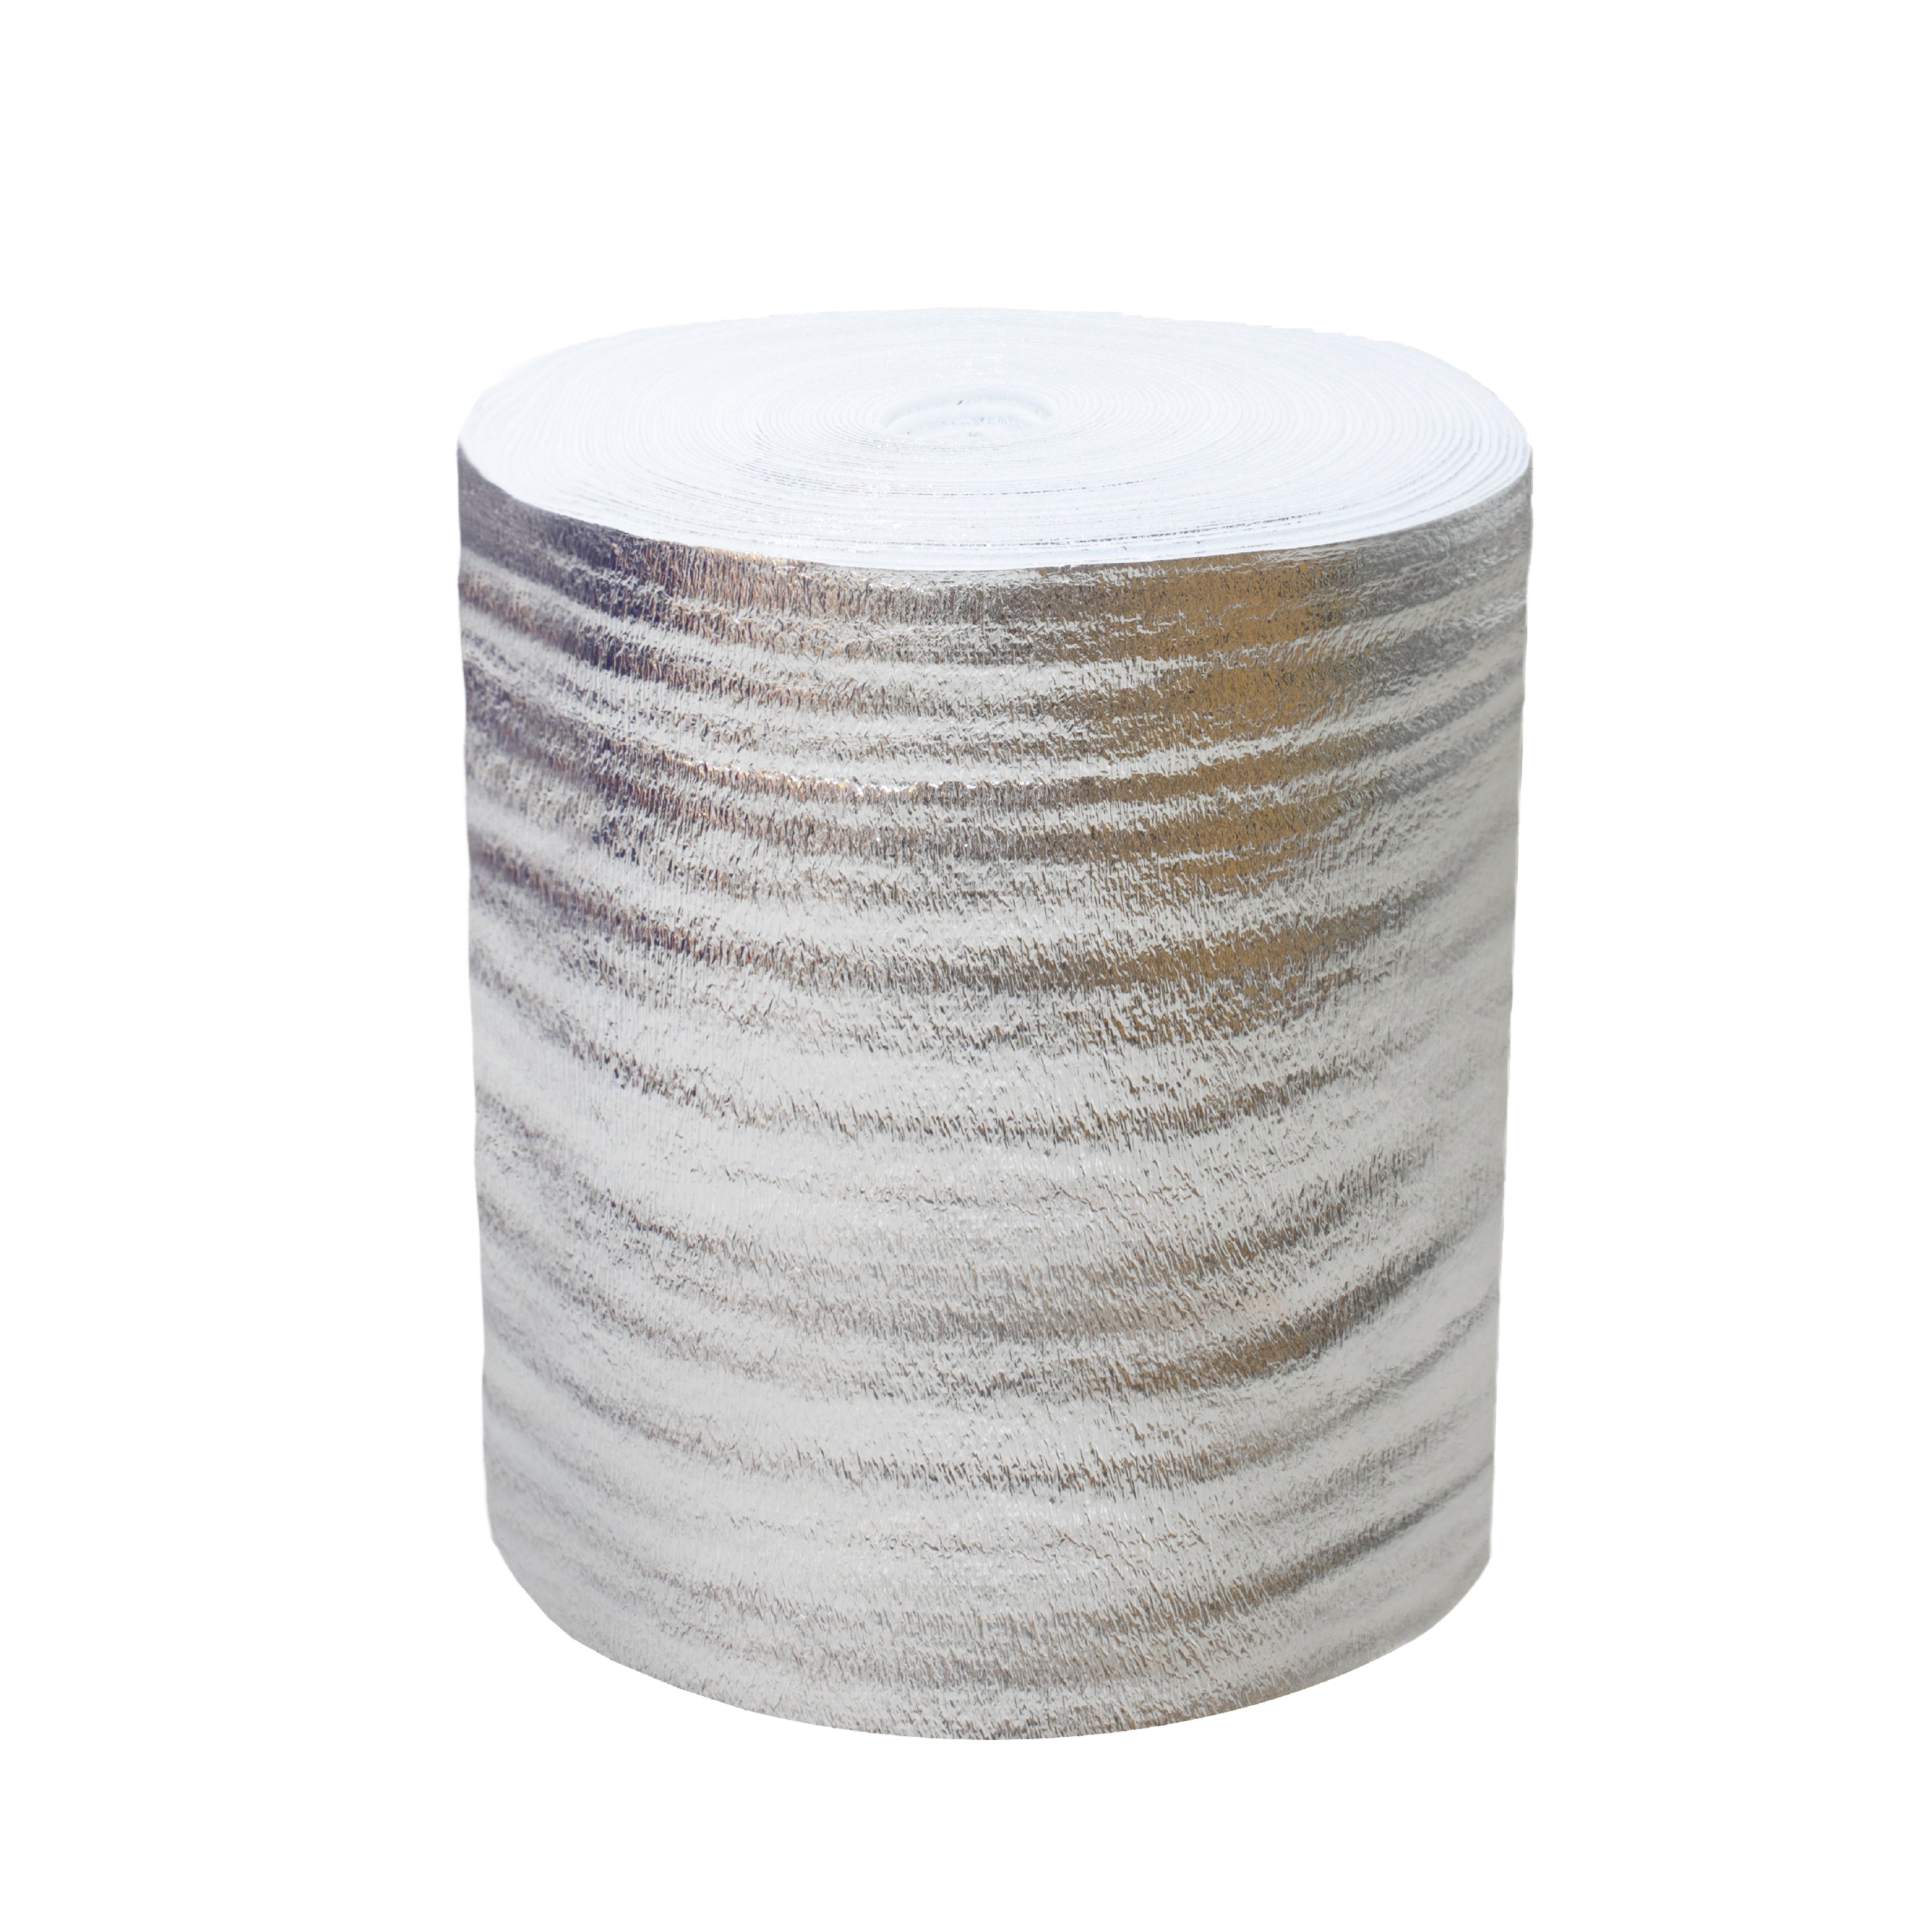 Aluminum Thermal Foil Insulation Roll 铝膜隔熱珍珠棉卷